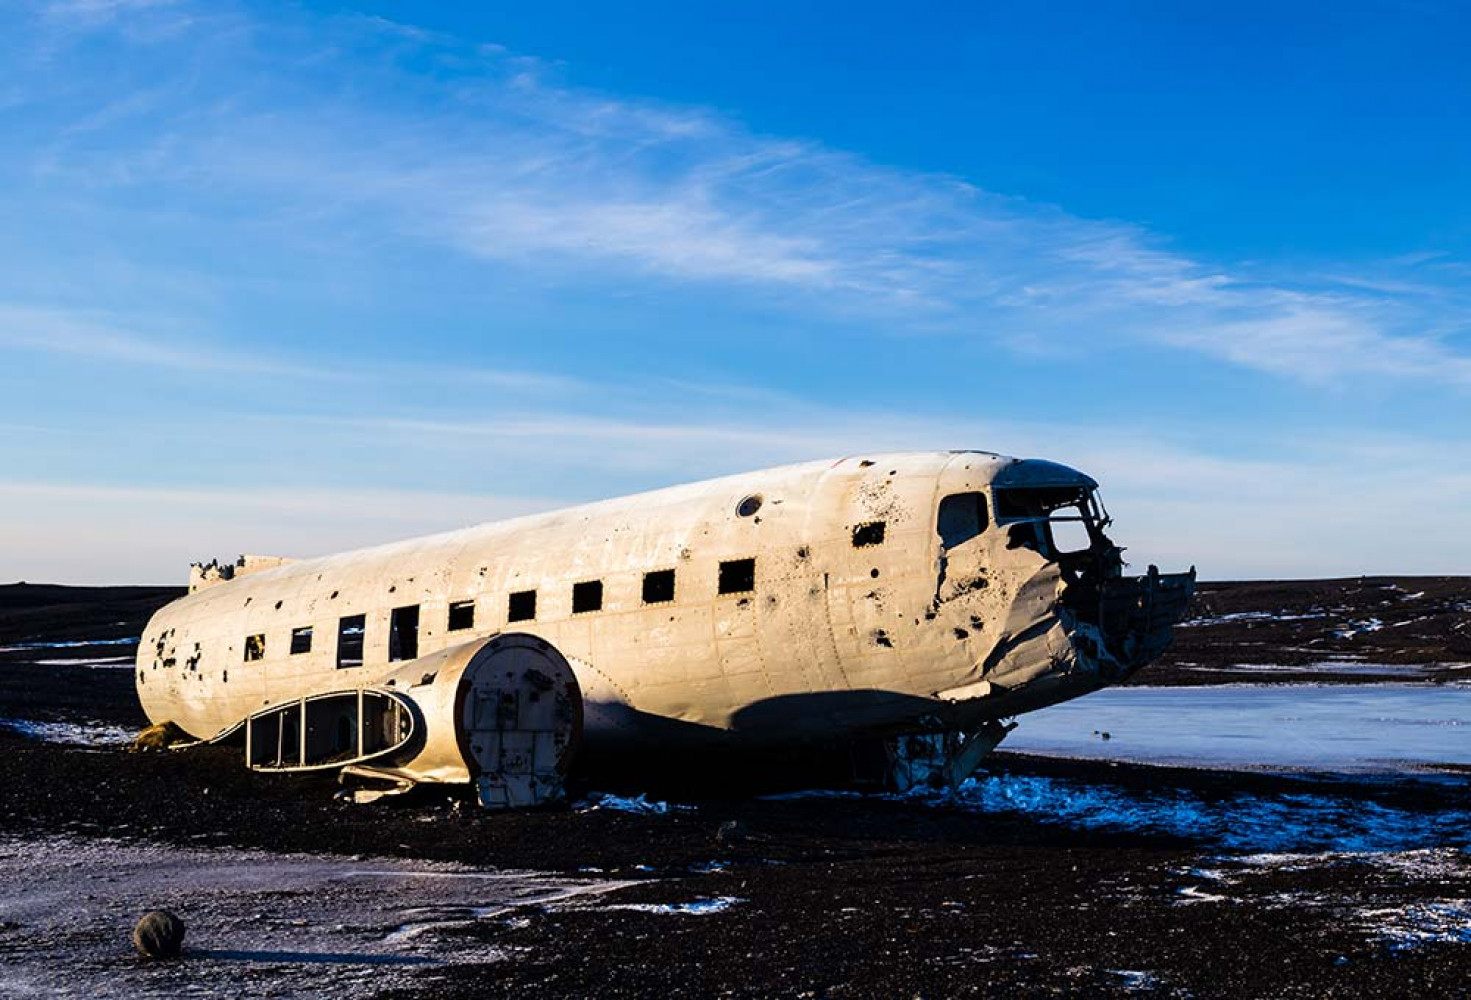 And Dağları'ndaki yamyamlık dramı: Uruguay Hava Kuvvetleri uçak kazası